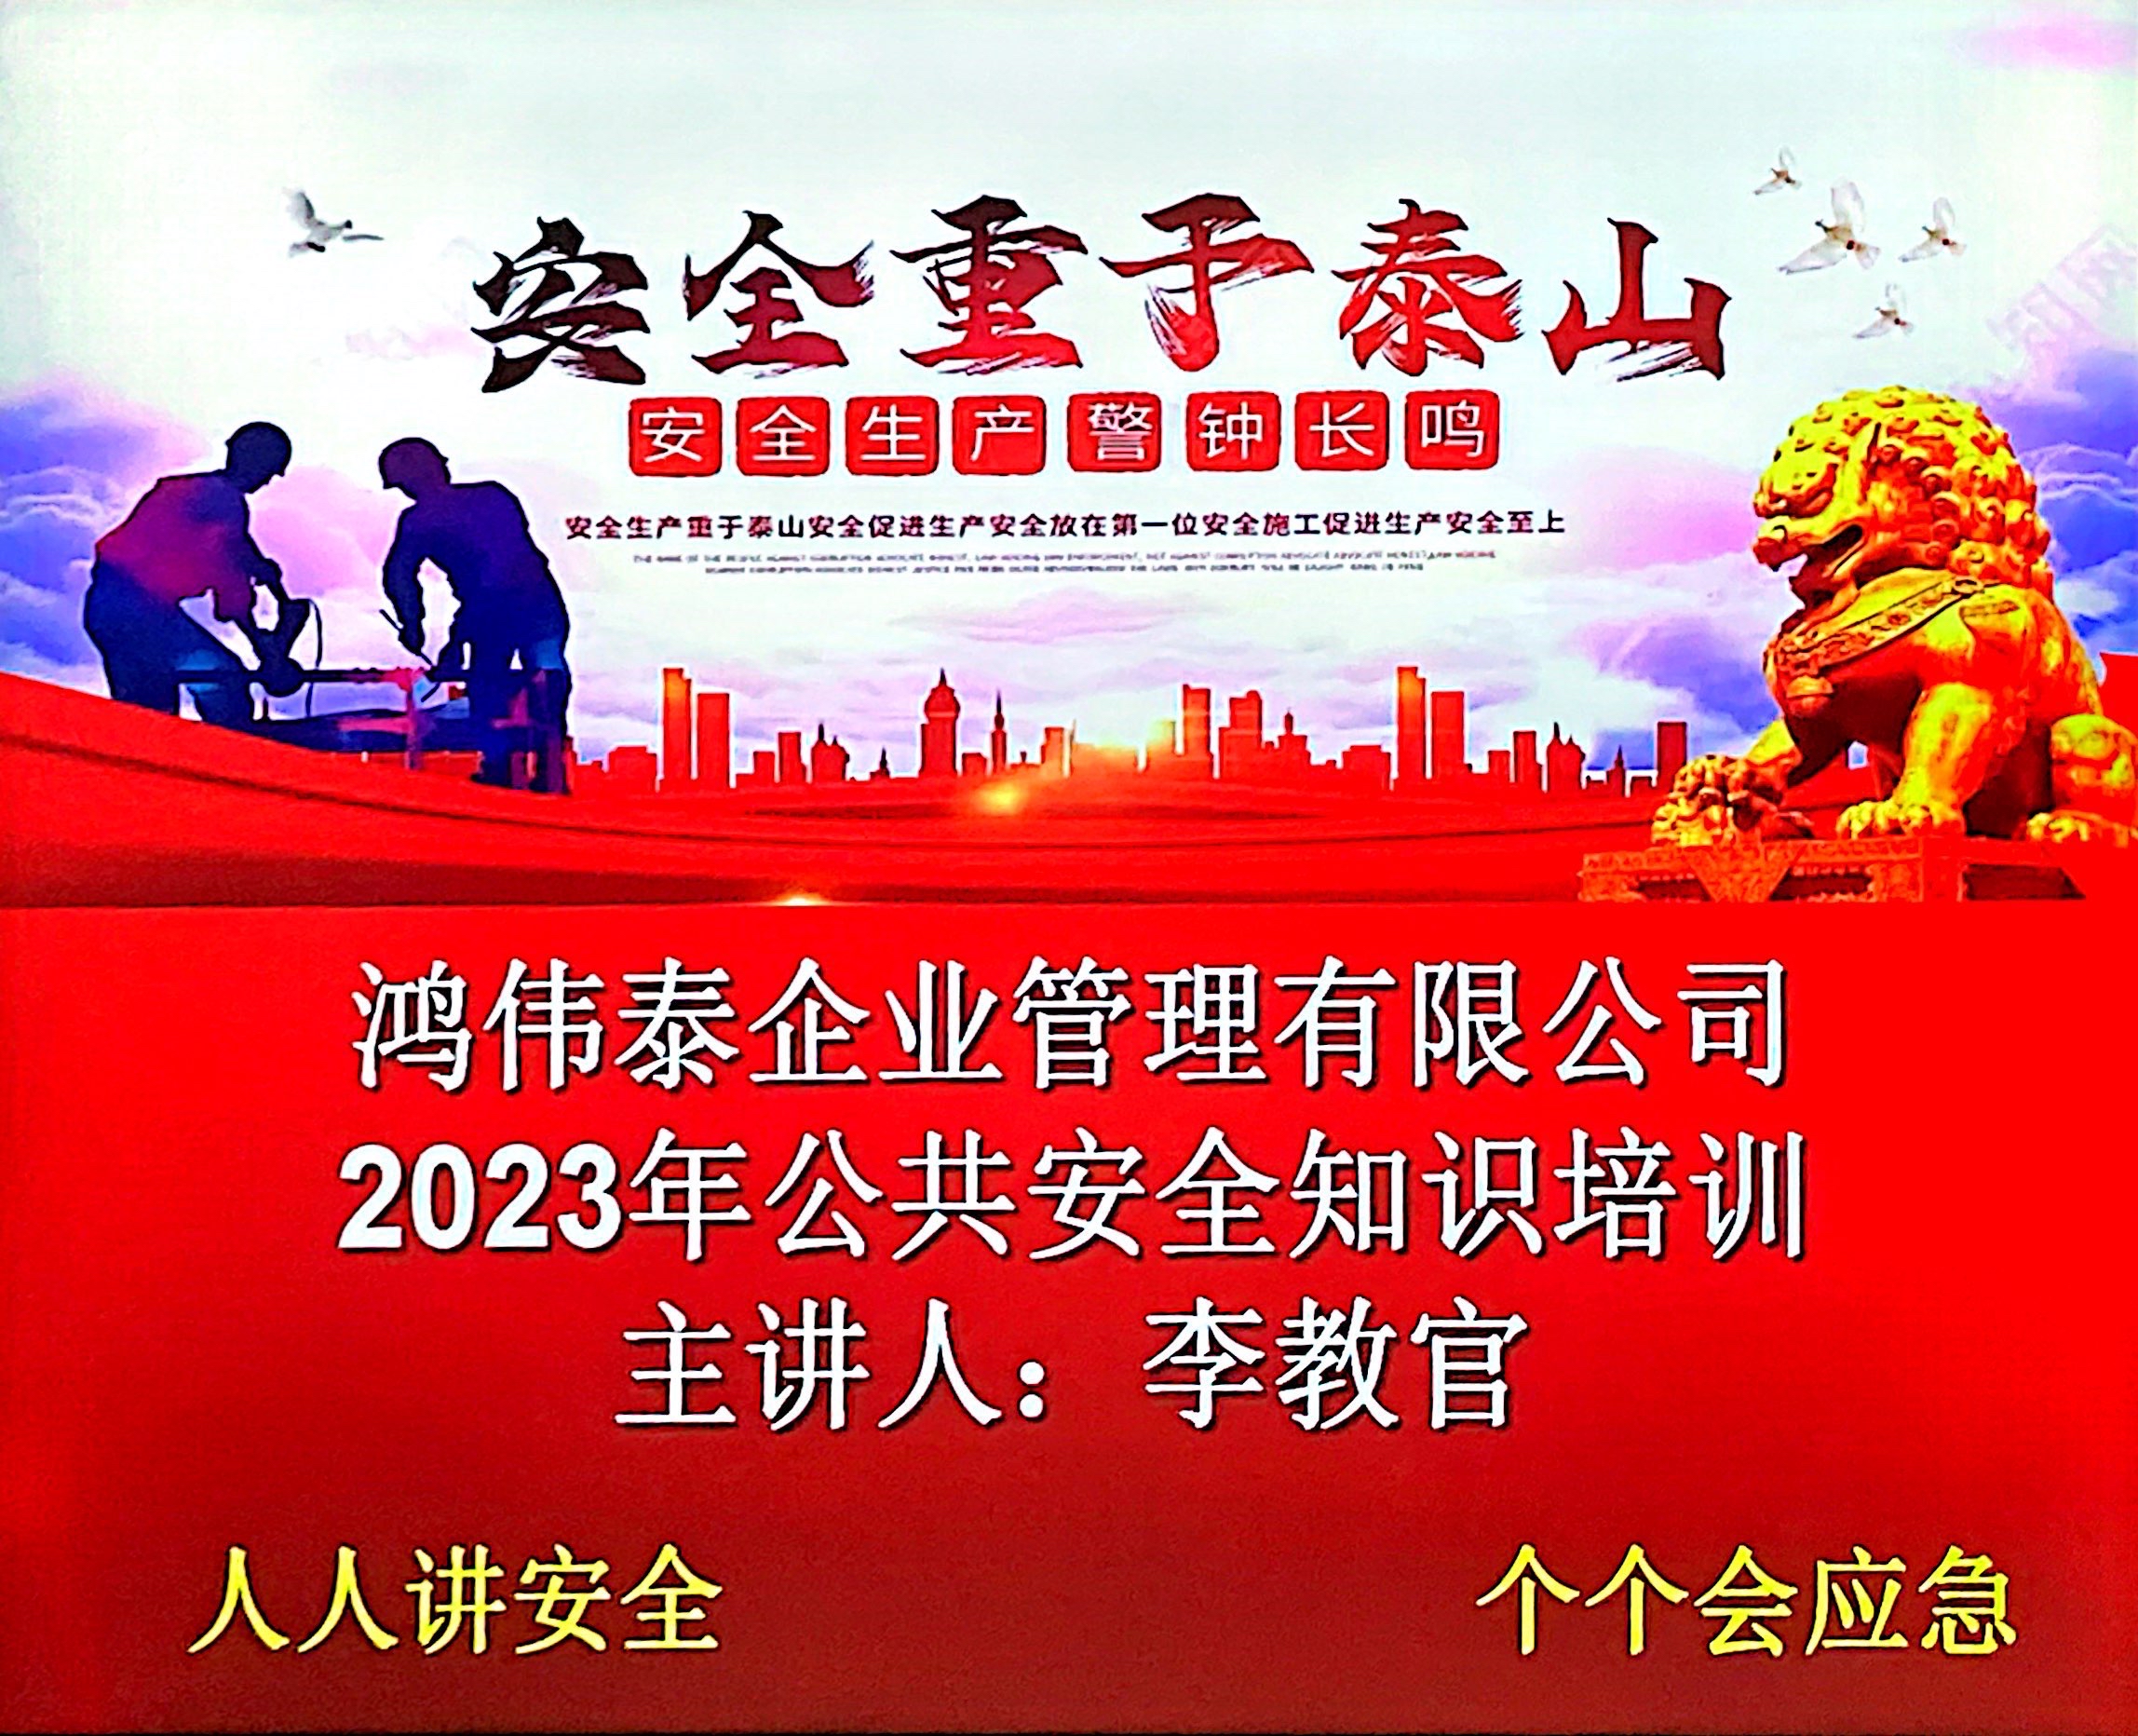 鸿伟泰企业管理有限公司联合行政消防部门召开2023年公共安全知识培训